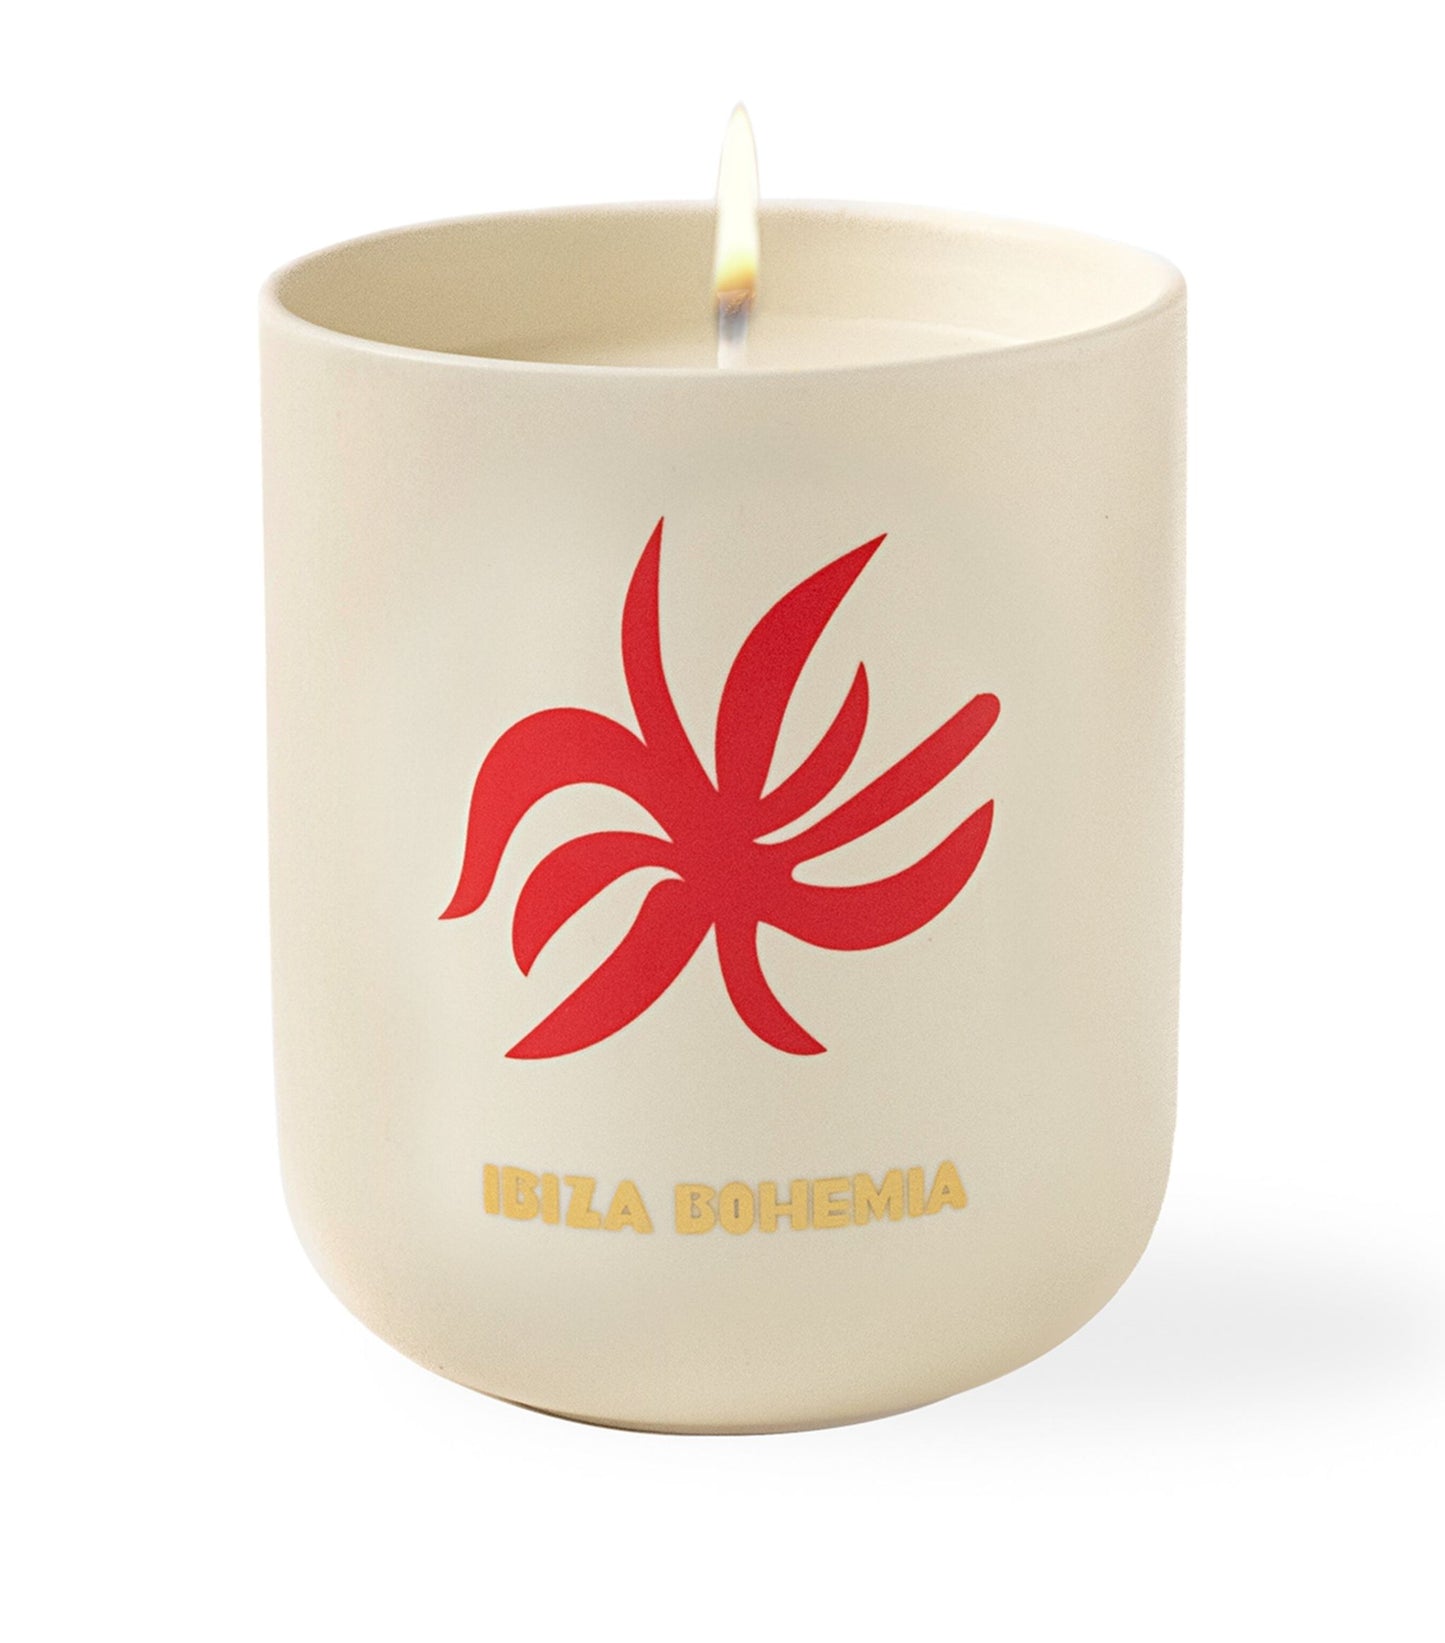 Ibiza Candle